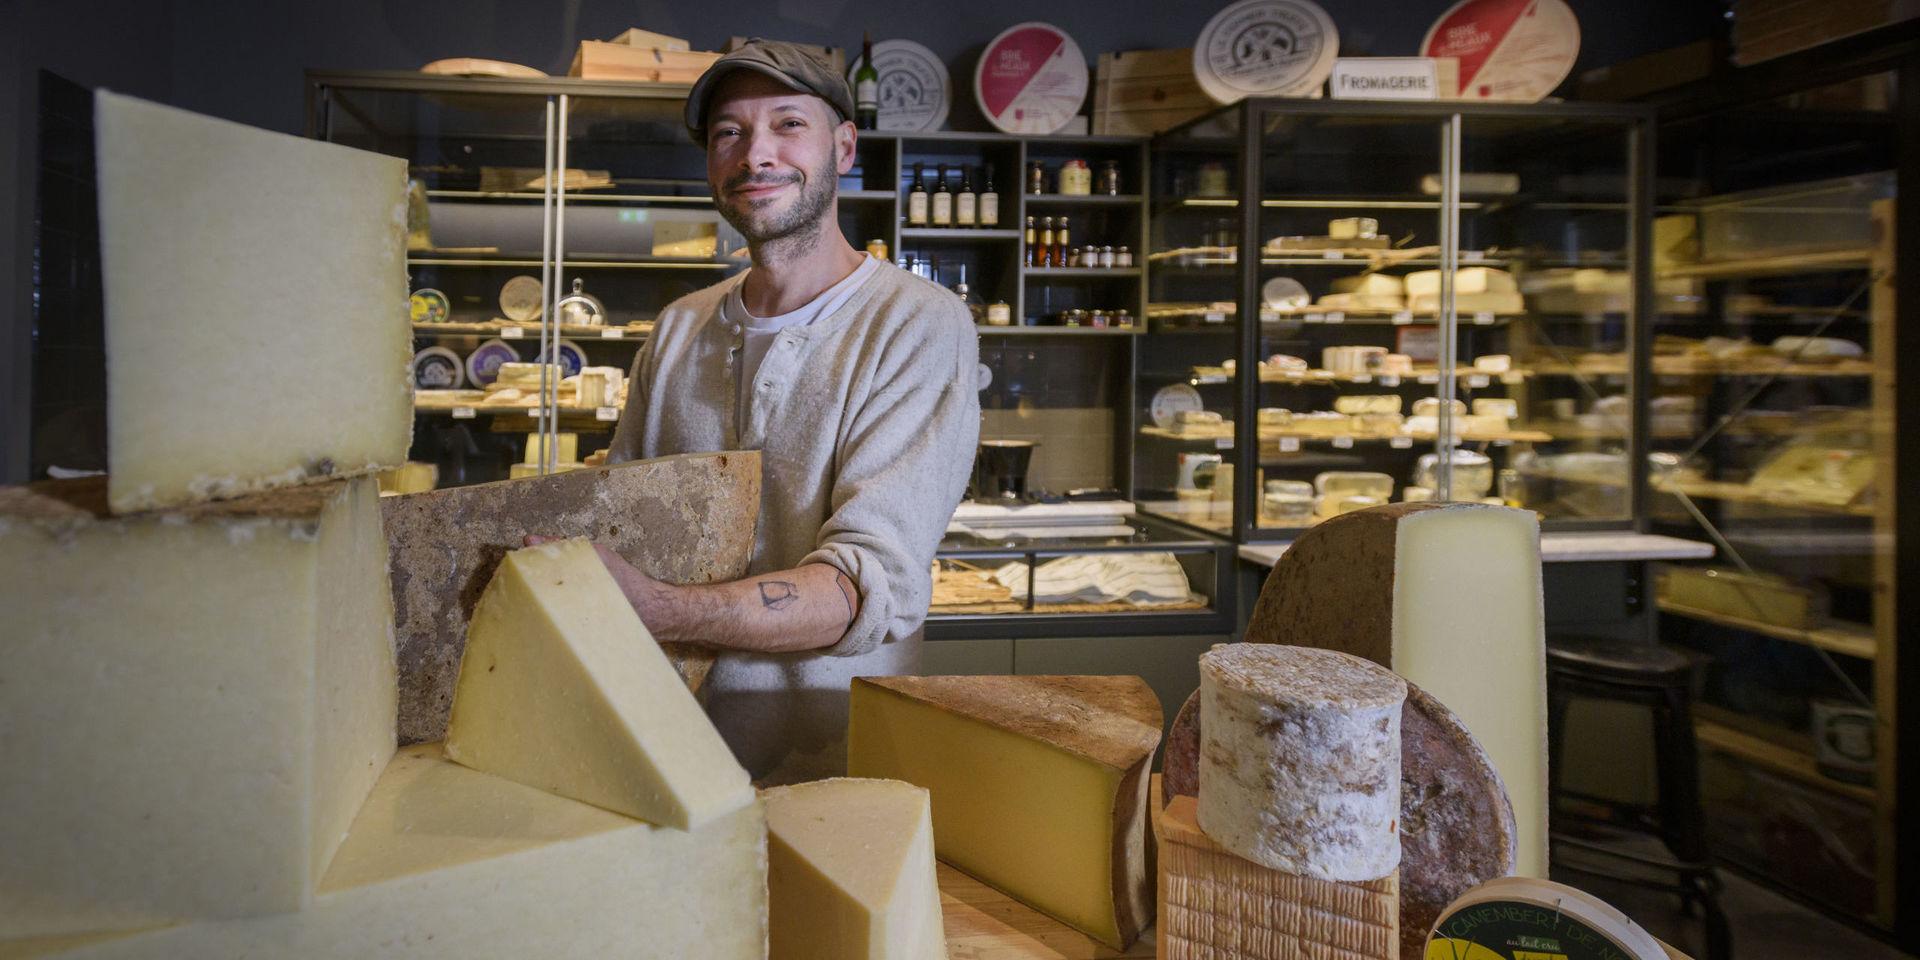 Ostexperten Rémi Dandoli längtar alltid efter veckans ostleverans från hemlandet Frankrike. ”När man får tag i någon väldigt sällsynt ost blir man lite stolt. Det känns extra kul då att presentera den för andra”, säger han.